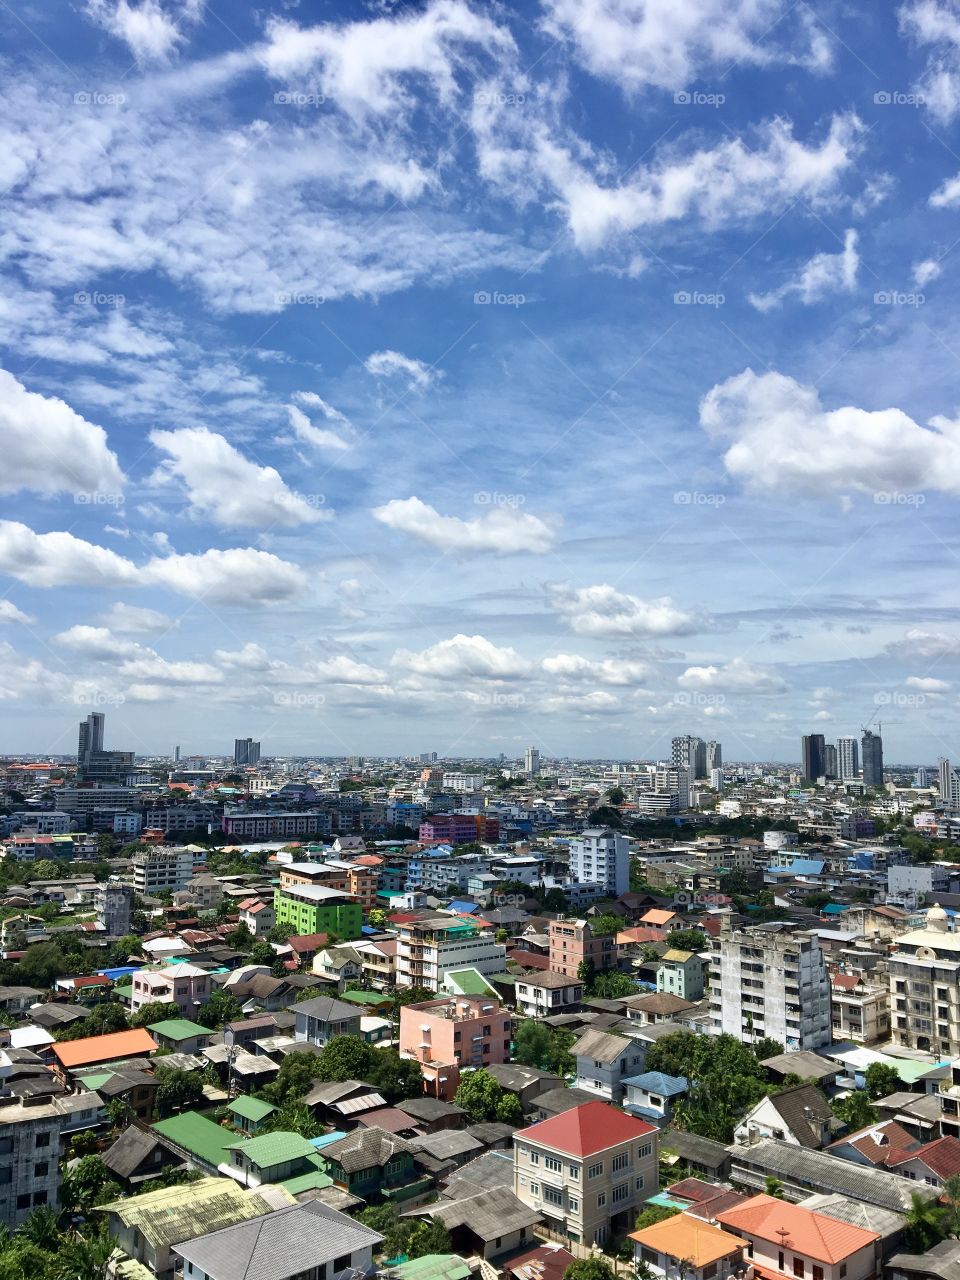 September in Bangkok